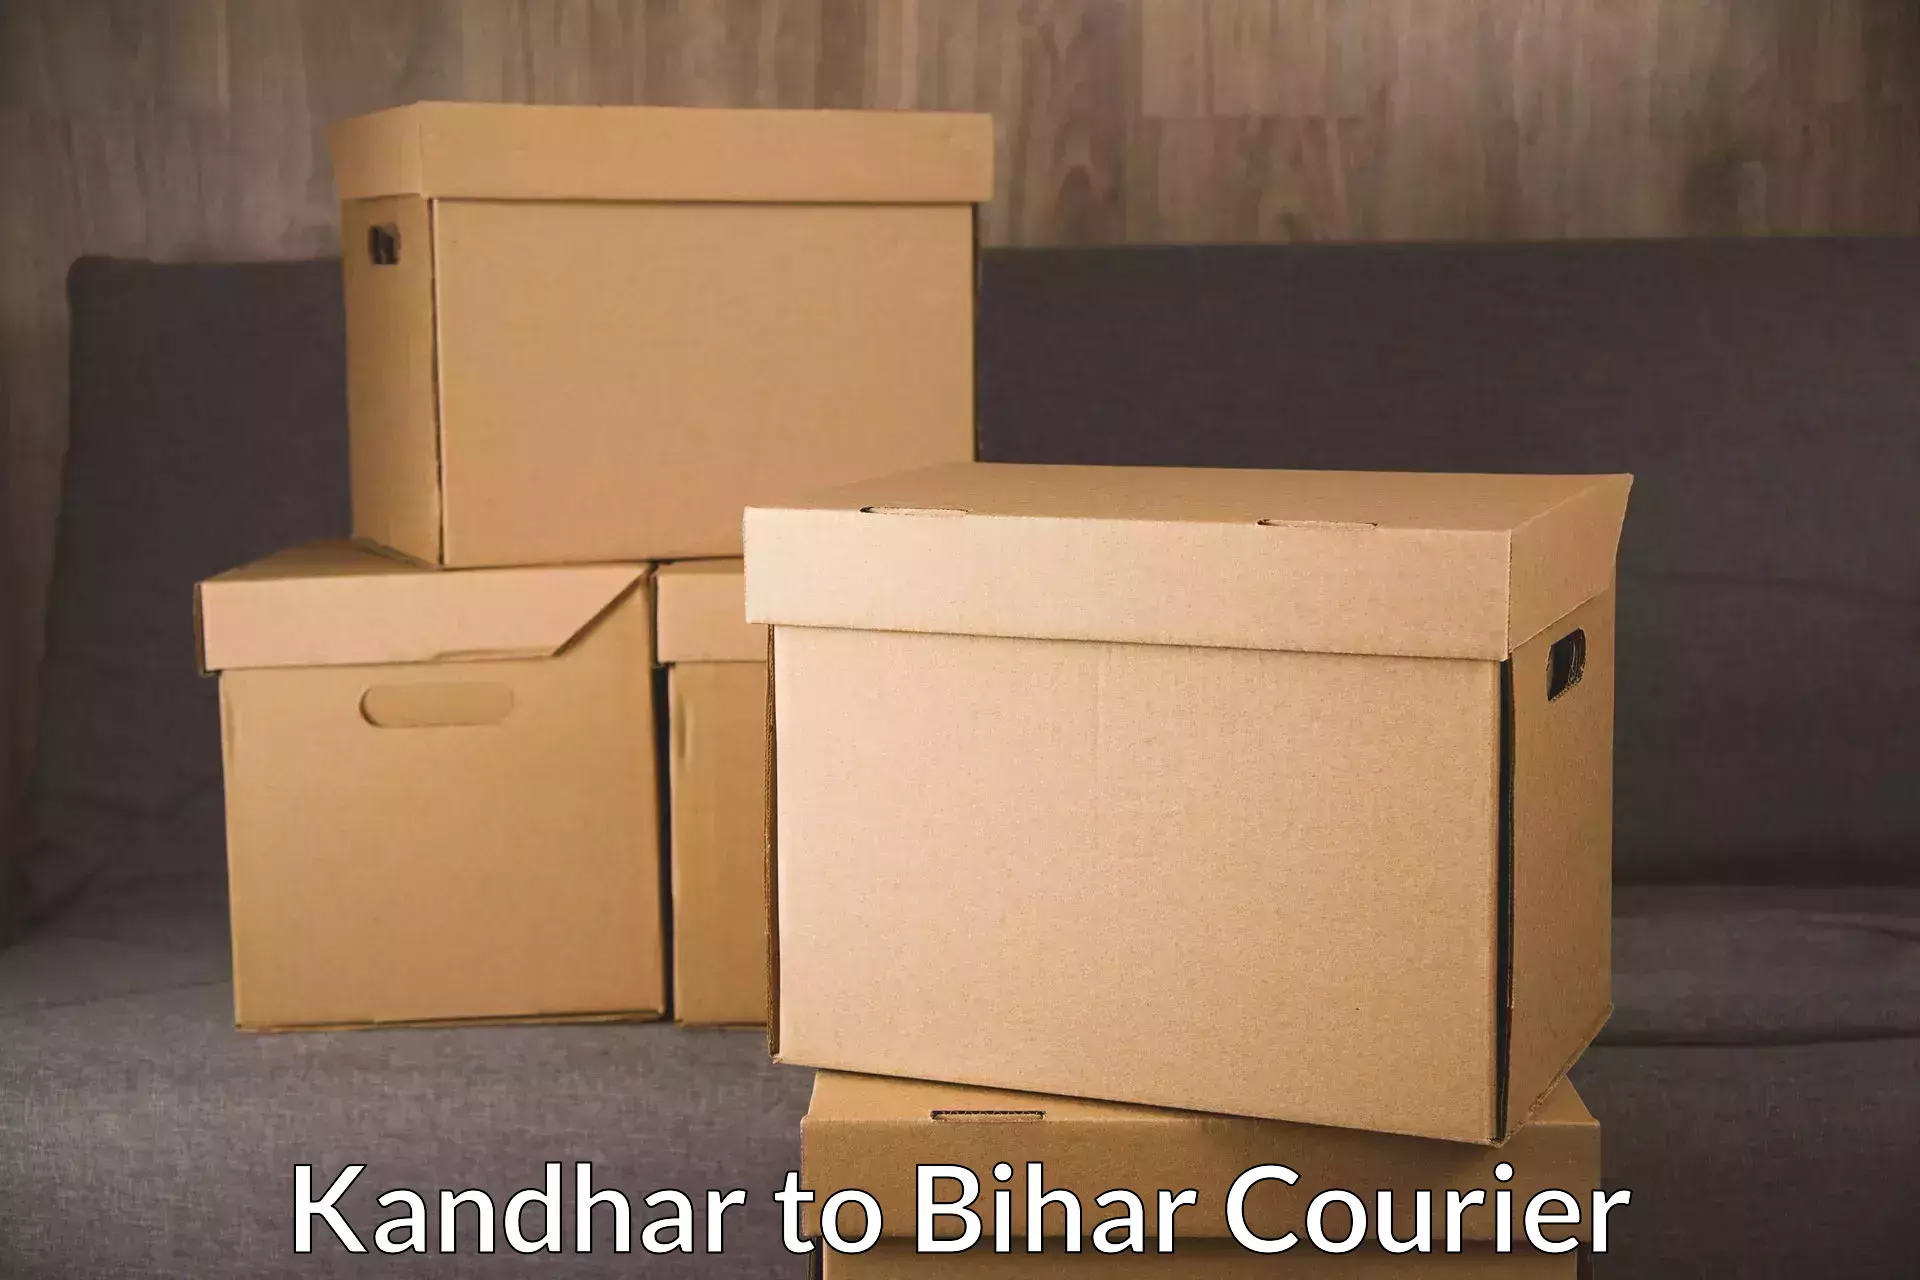 Courier service comparison Kandhar to Malmaliya